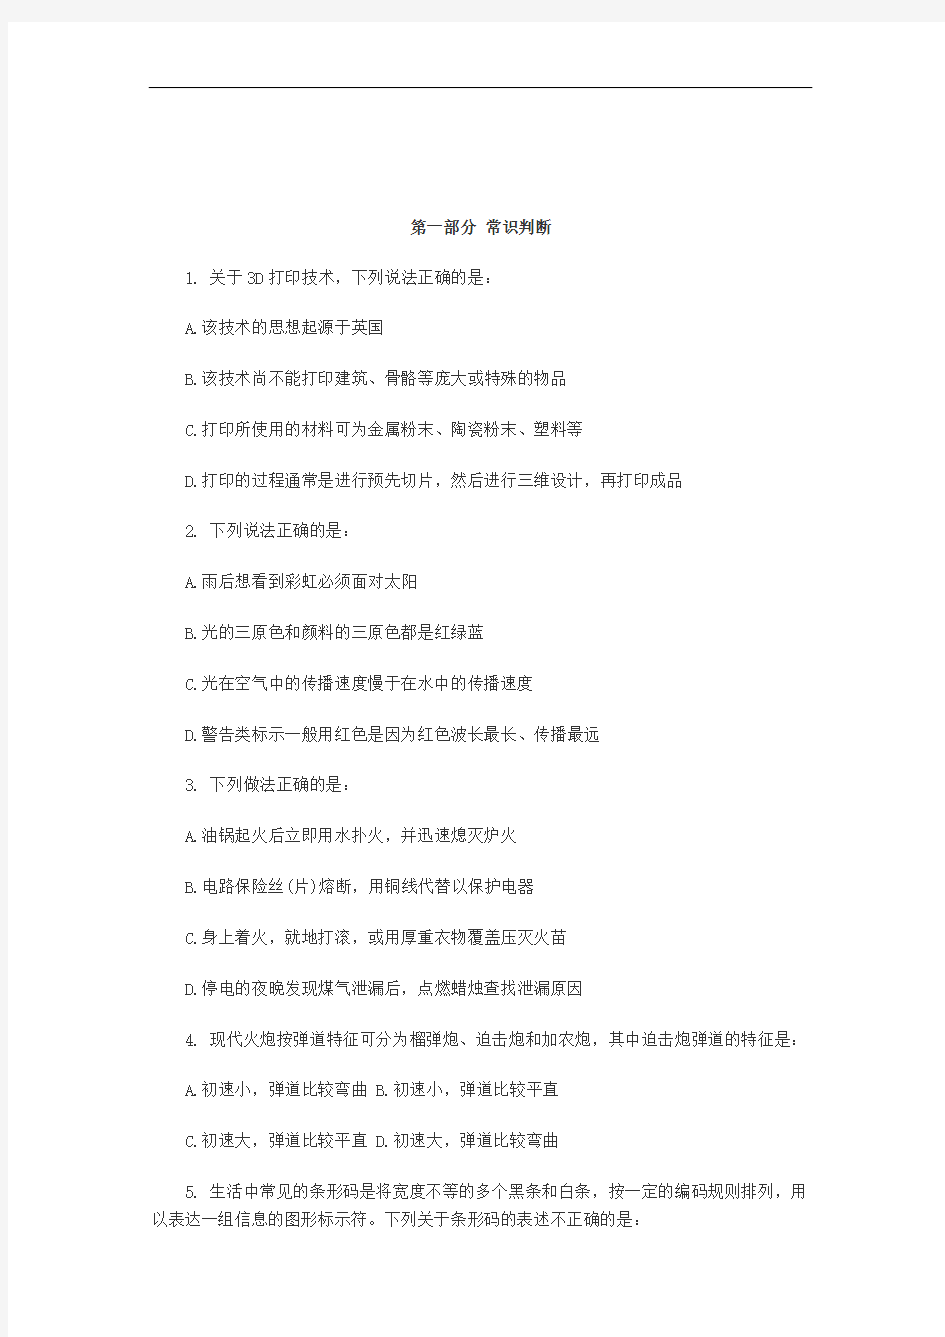 2014年四川公务员考试行测真题及答案解析(中公版)